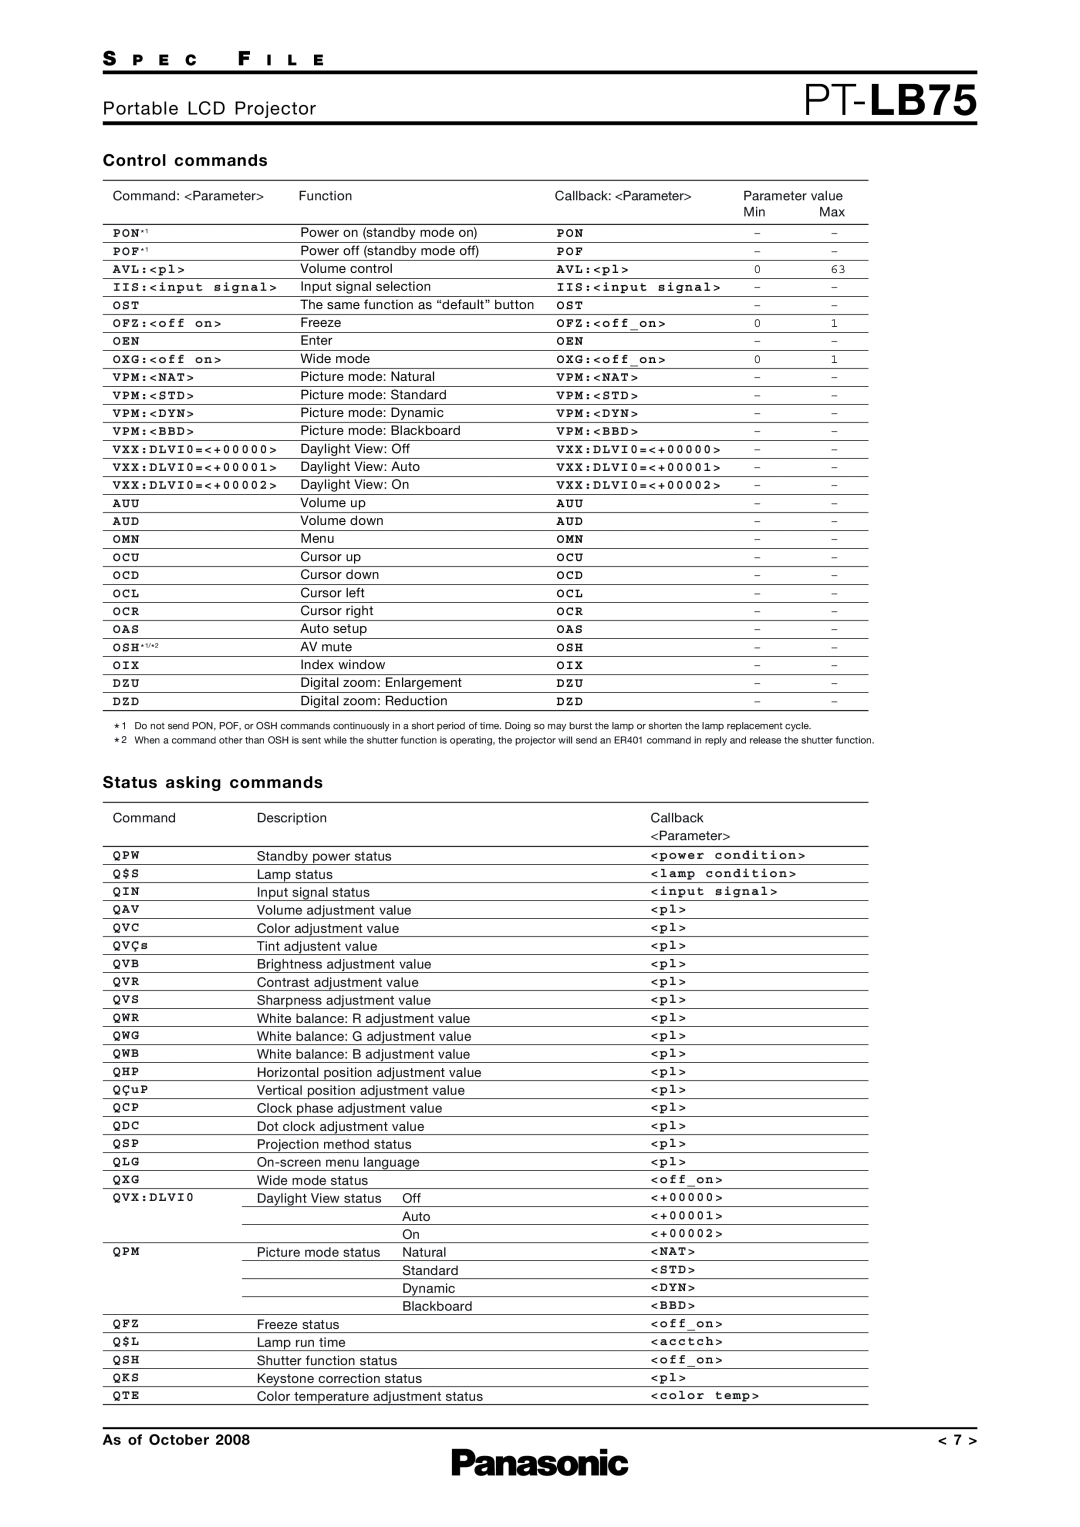 Panasonic PT-LB75 Control commands, Status asking commands, Portable LCD Projector, S P E C F I L E, As of October 